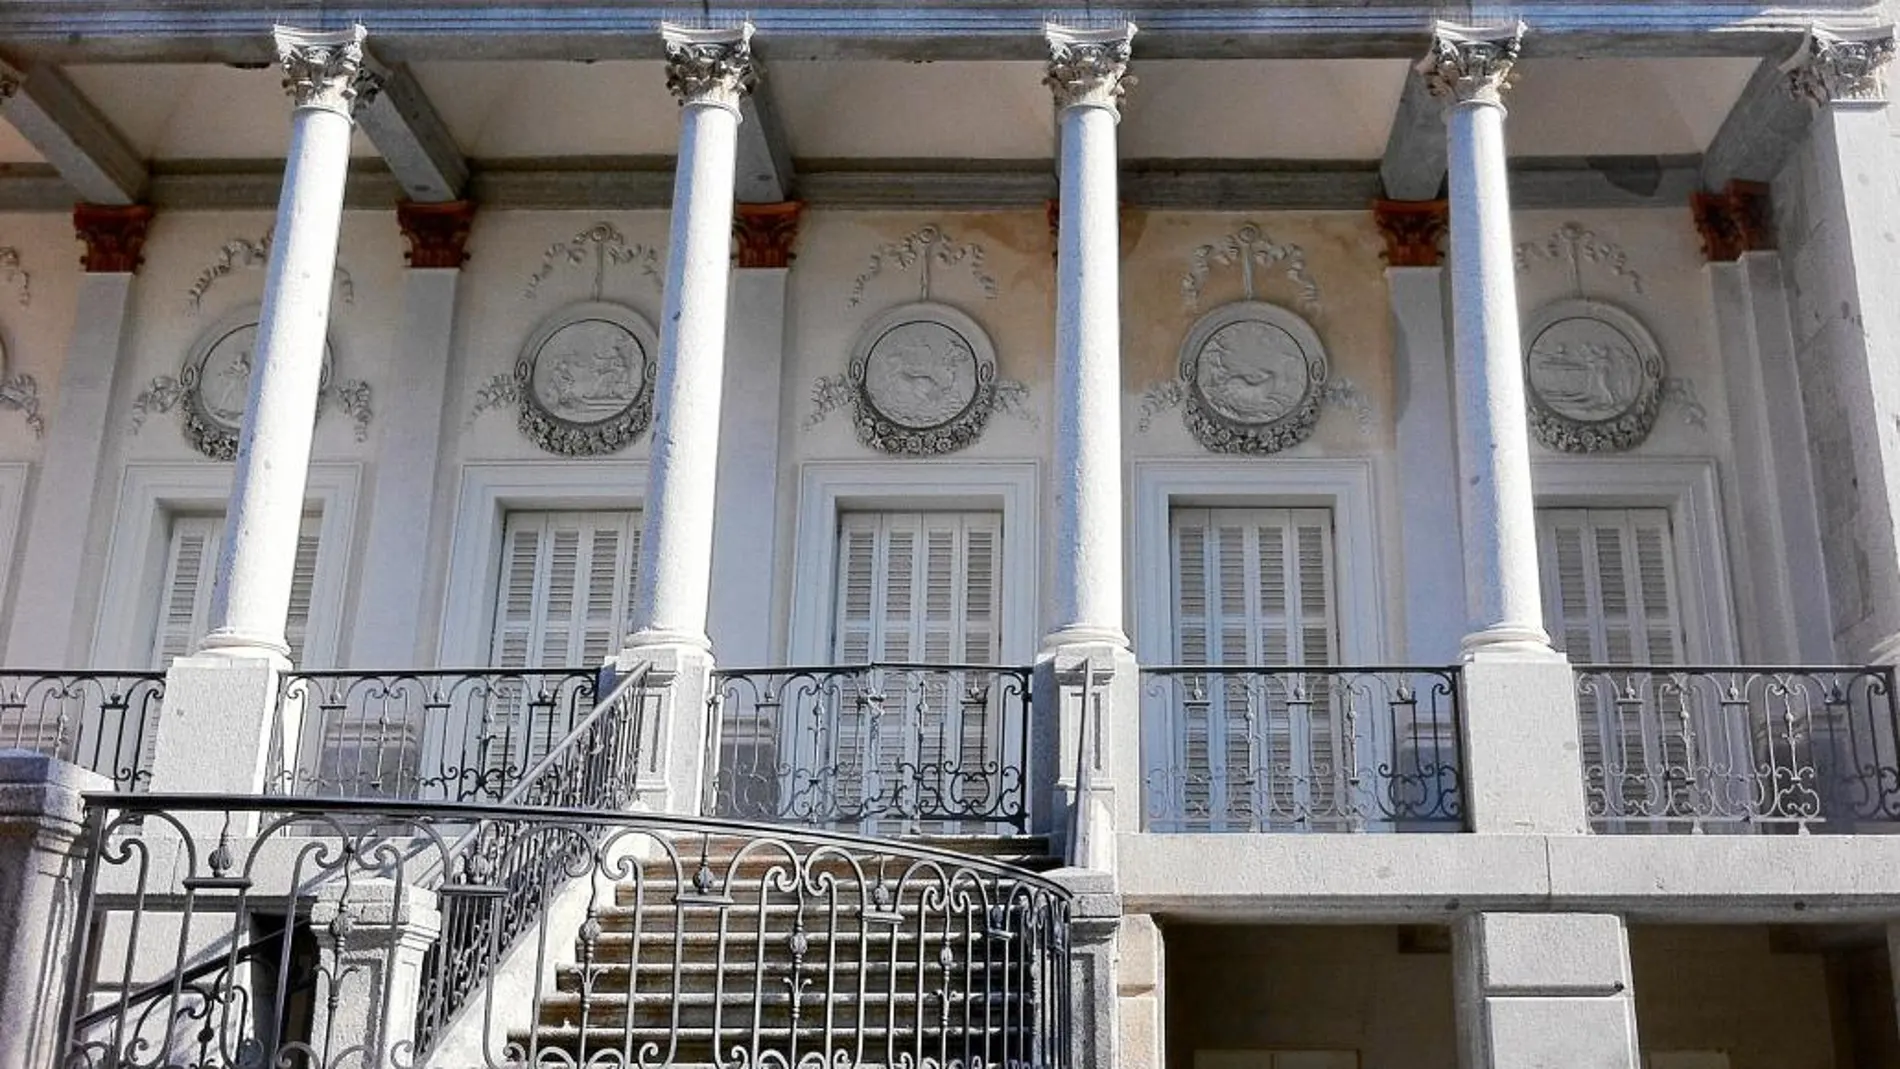 El edificio, de estilo neoclásico, fue contruido a finales del siglo XVIII y dejó de pertenecer a la familia de los duques de Osuna en 1884